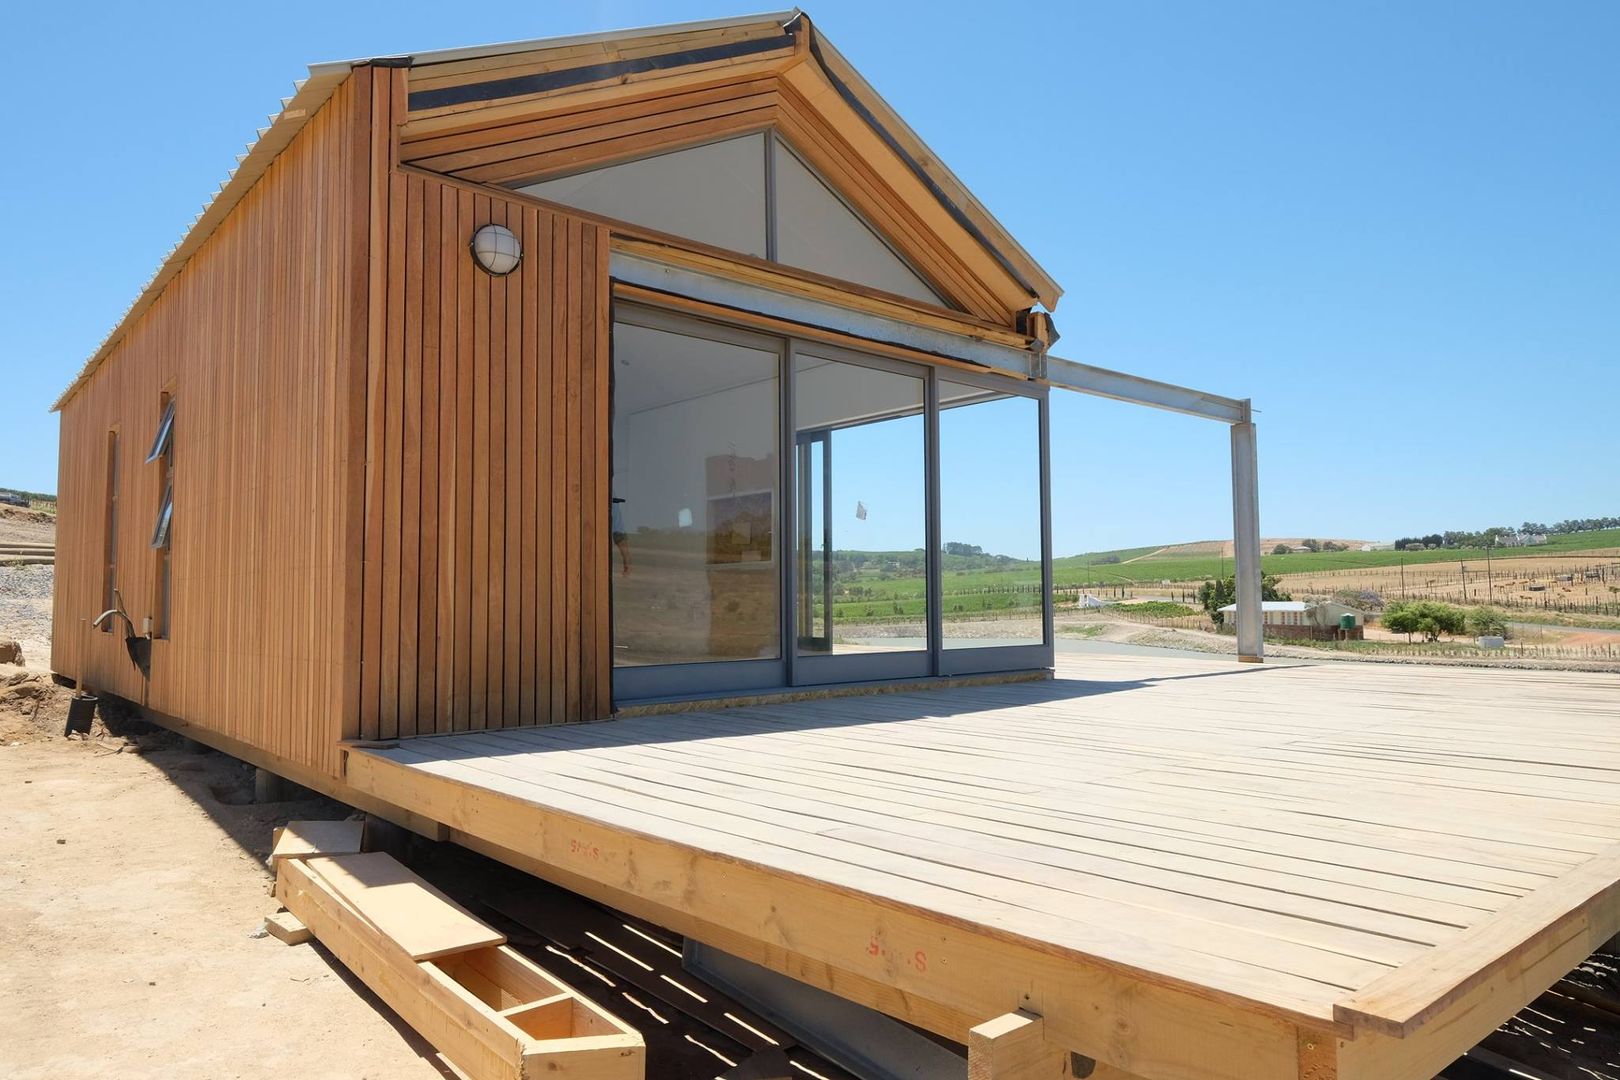 Mini-Holzhaus mit Terrasse: modern wohnen auf 50 qm, Greenpods Greenpods Skandinavische Häuser Holz Holznachbildung